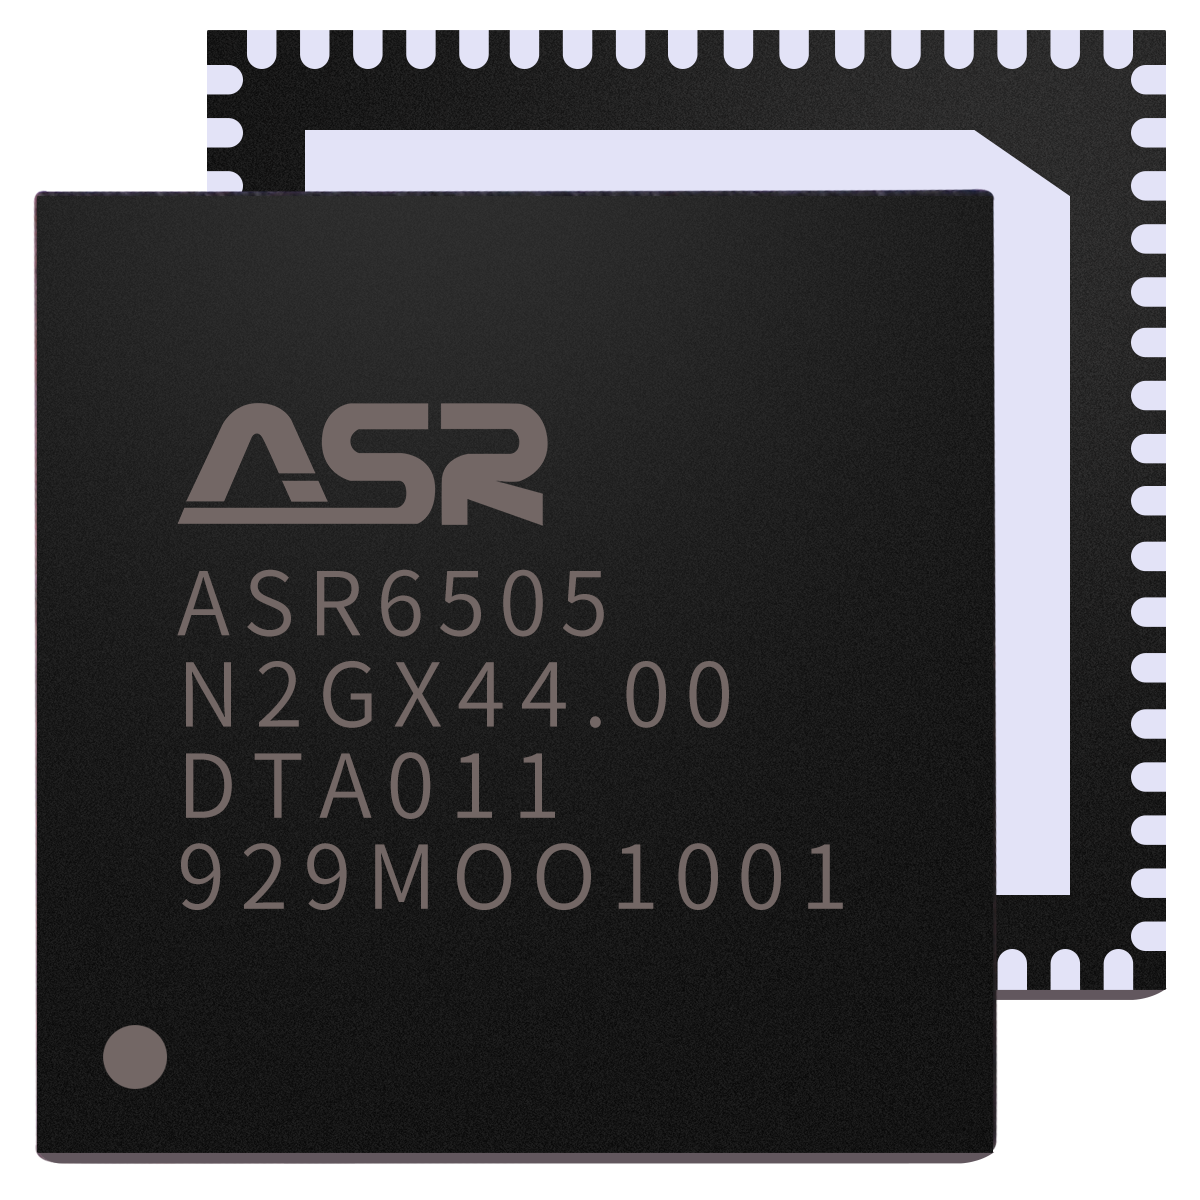 LoRa无线通信芯片组ASR6505图片